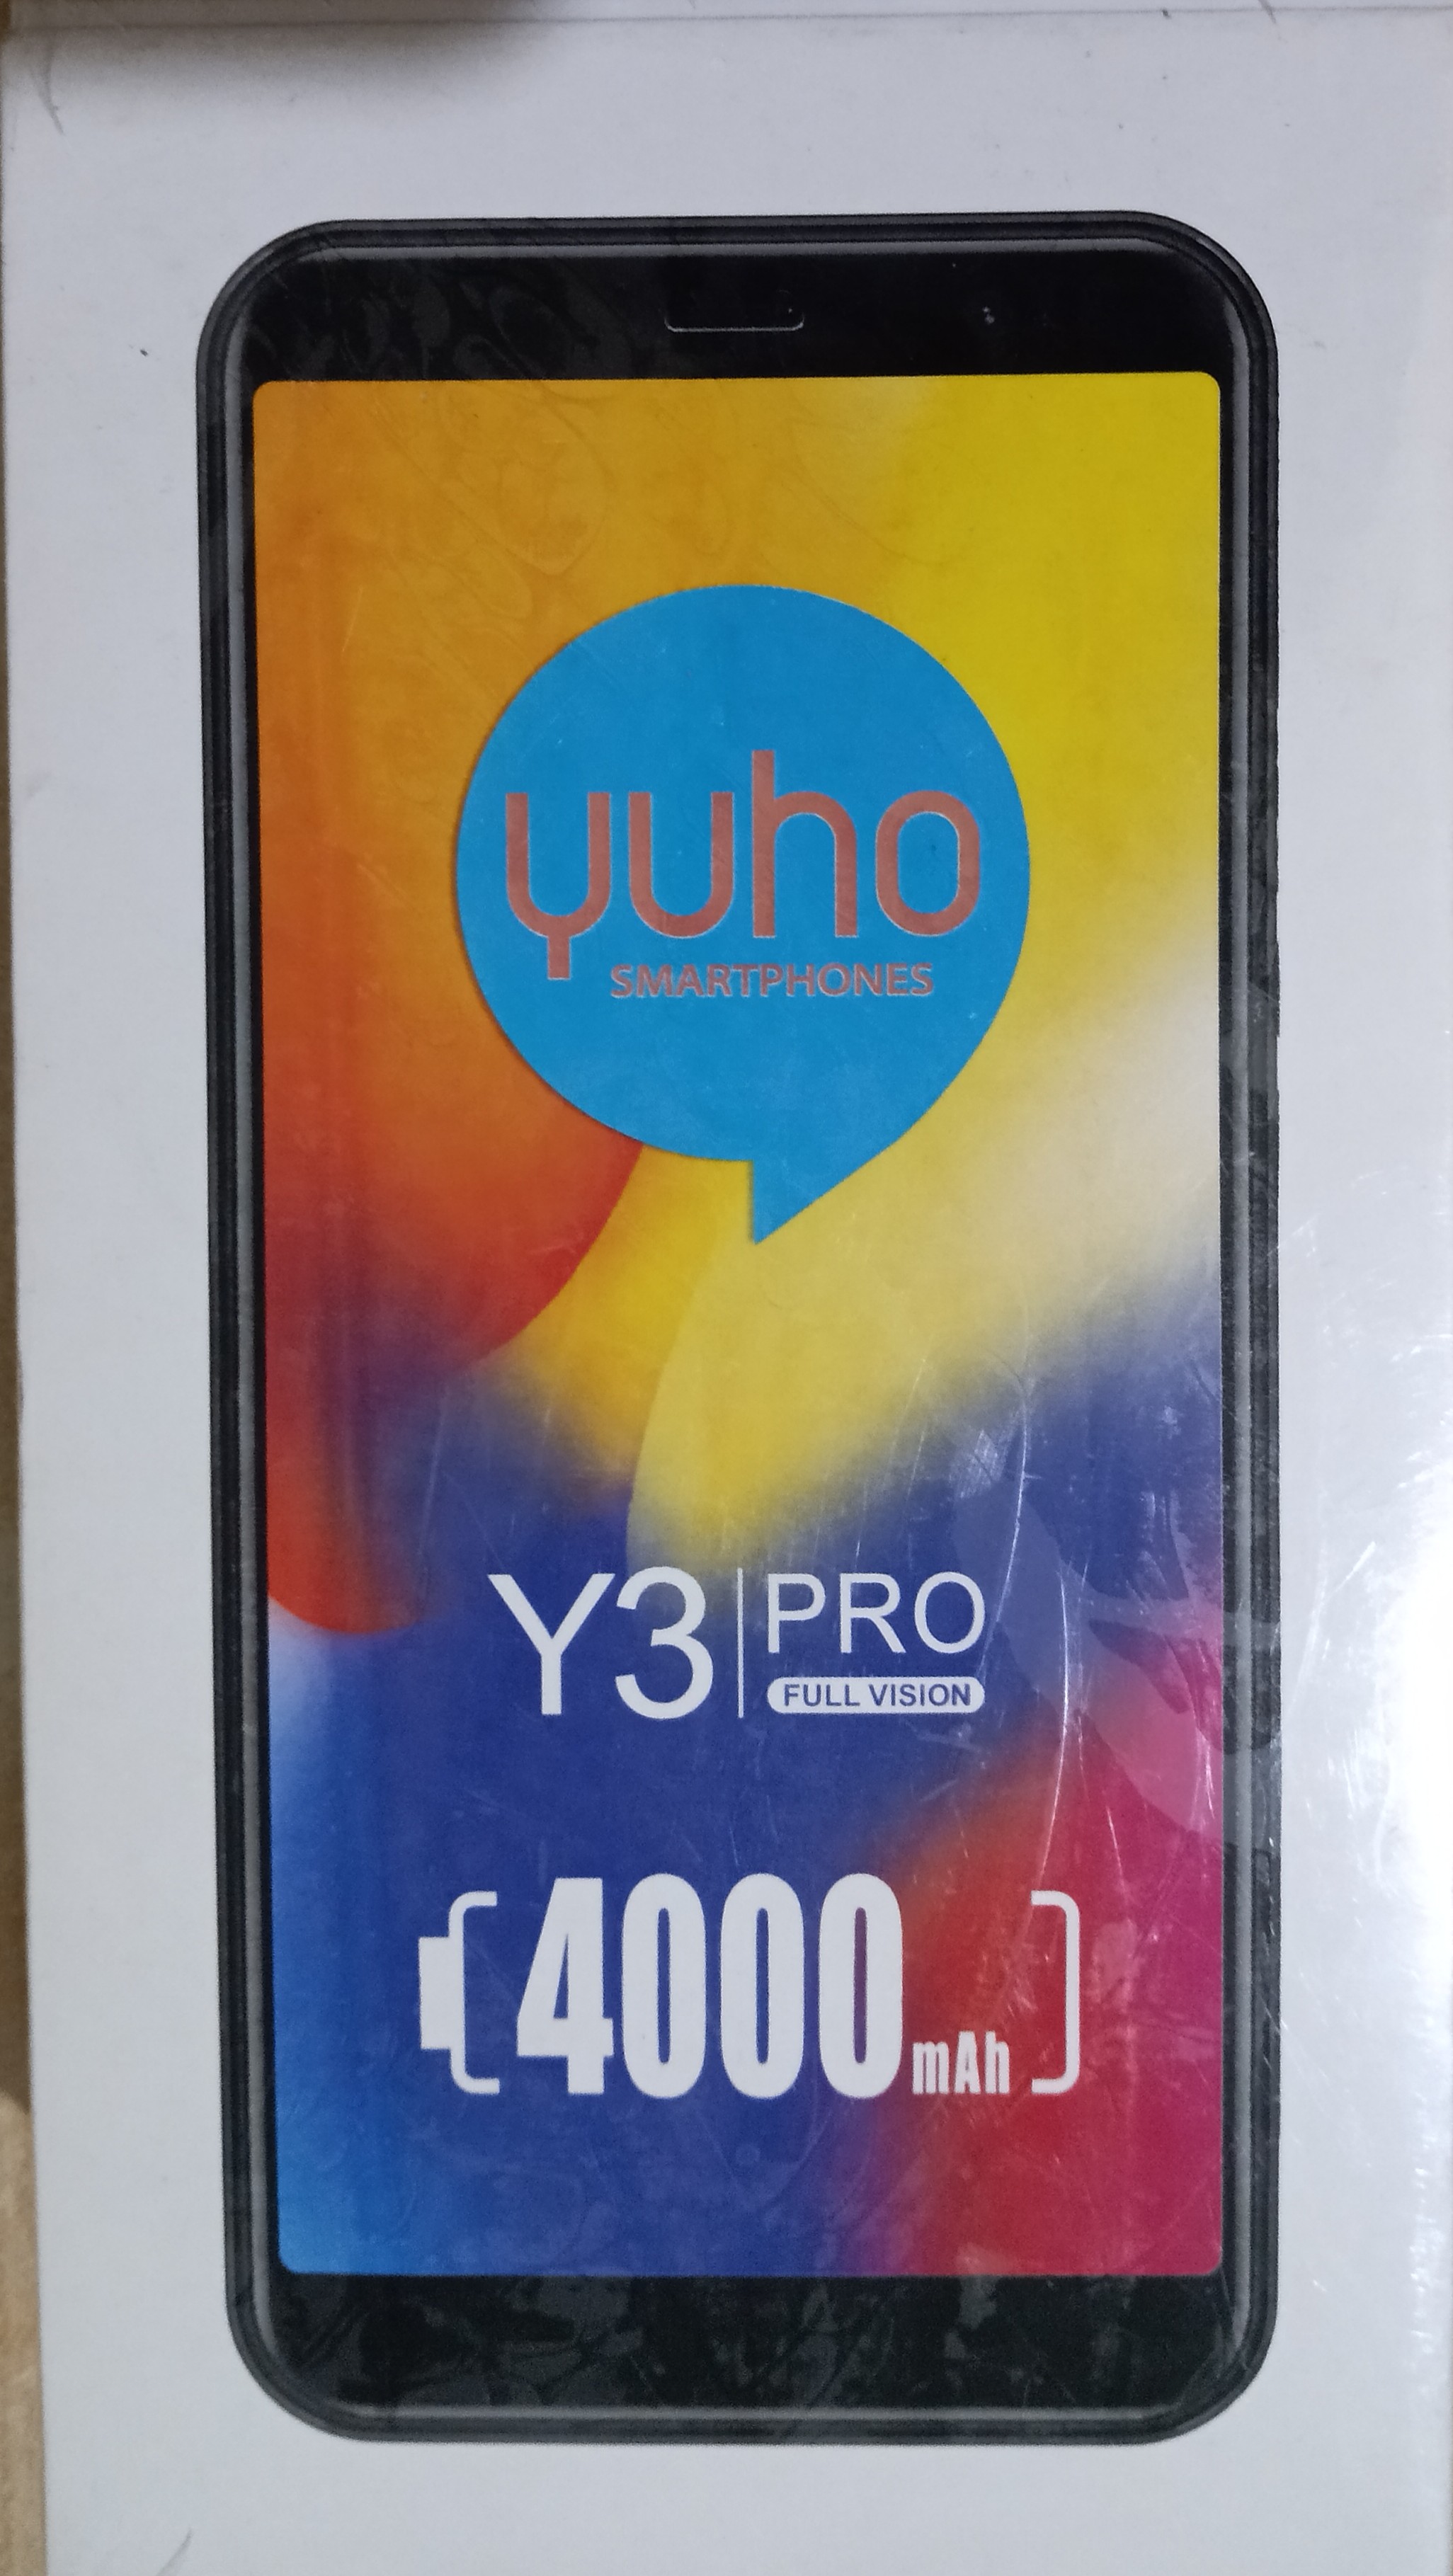 yuho y3 pro price